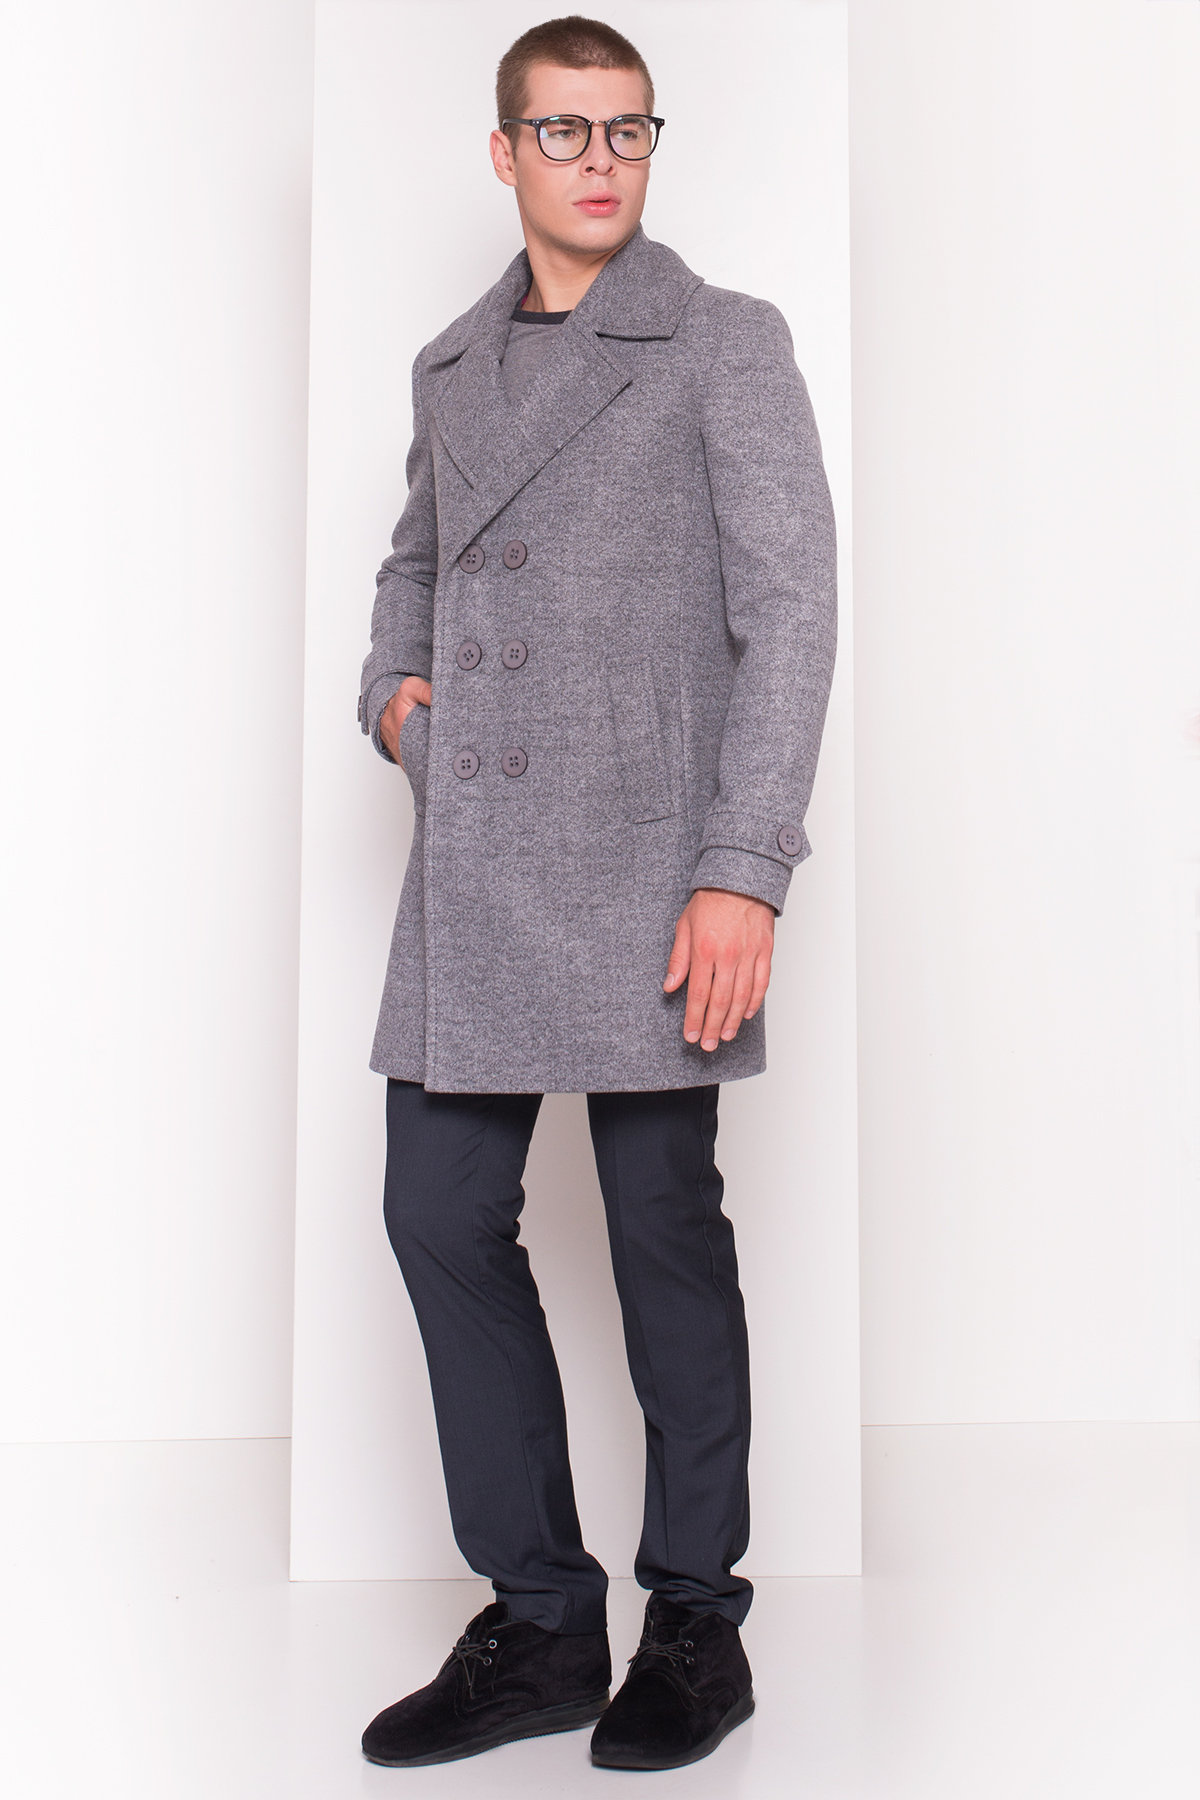 Пальто мужское Лоренс 5403 АРТ. 36575 Цвет: Серый Темный LW-5 - фото 2, интернет магазин tm-modus.ru